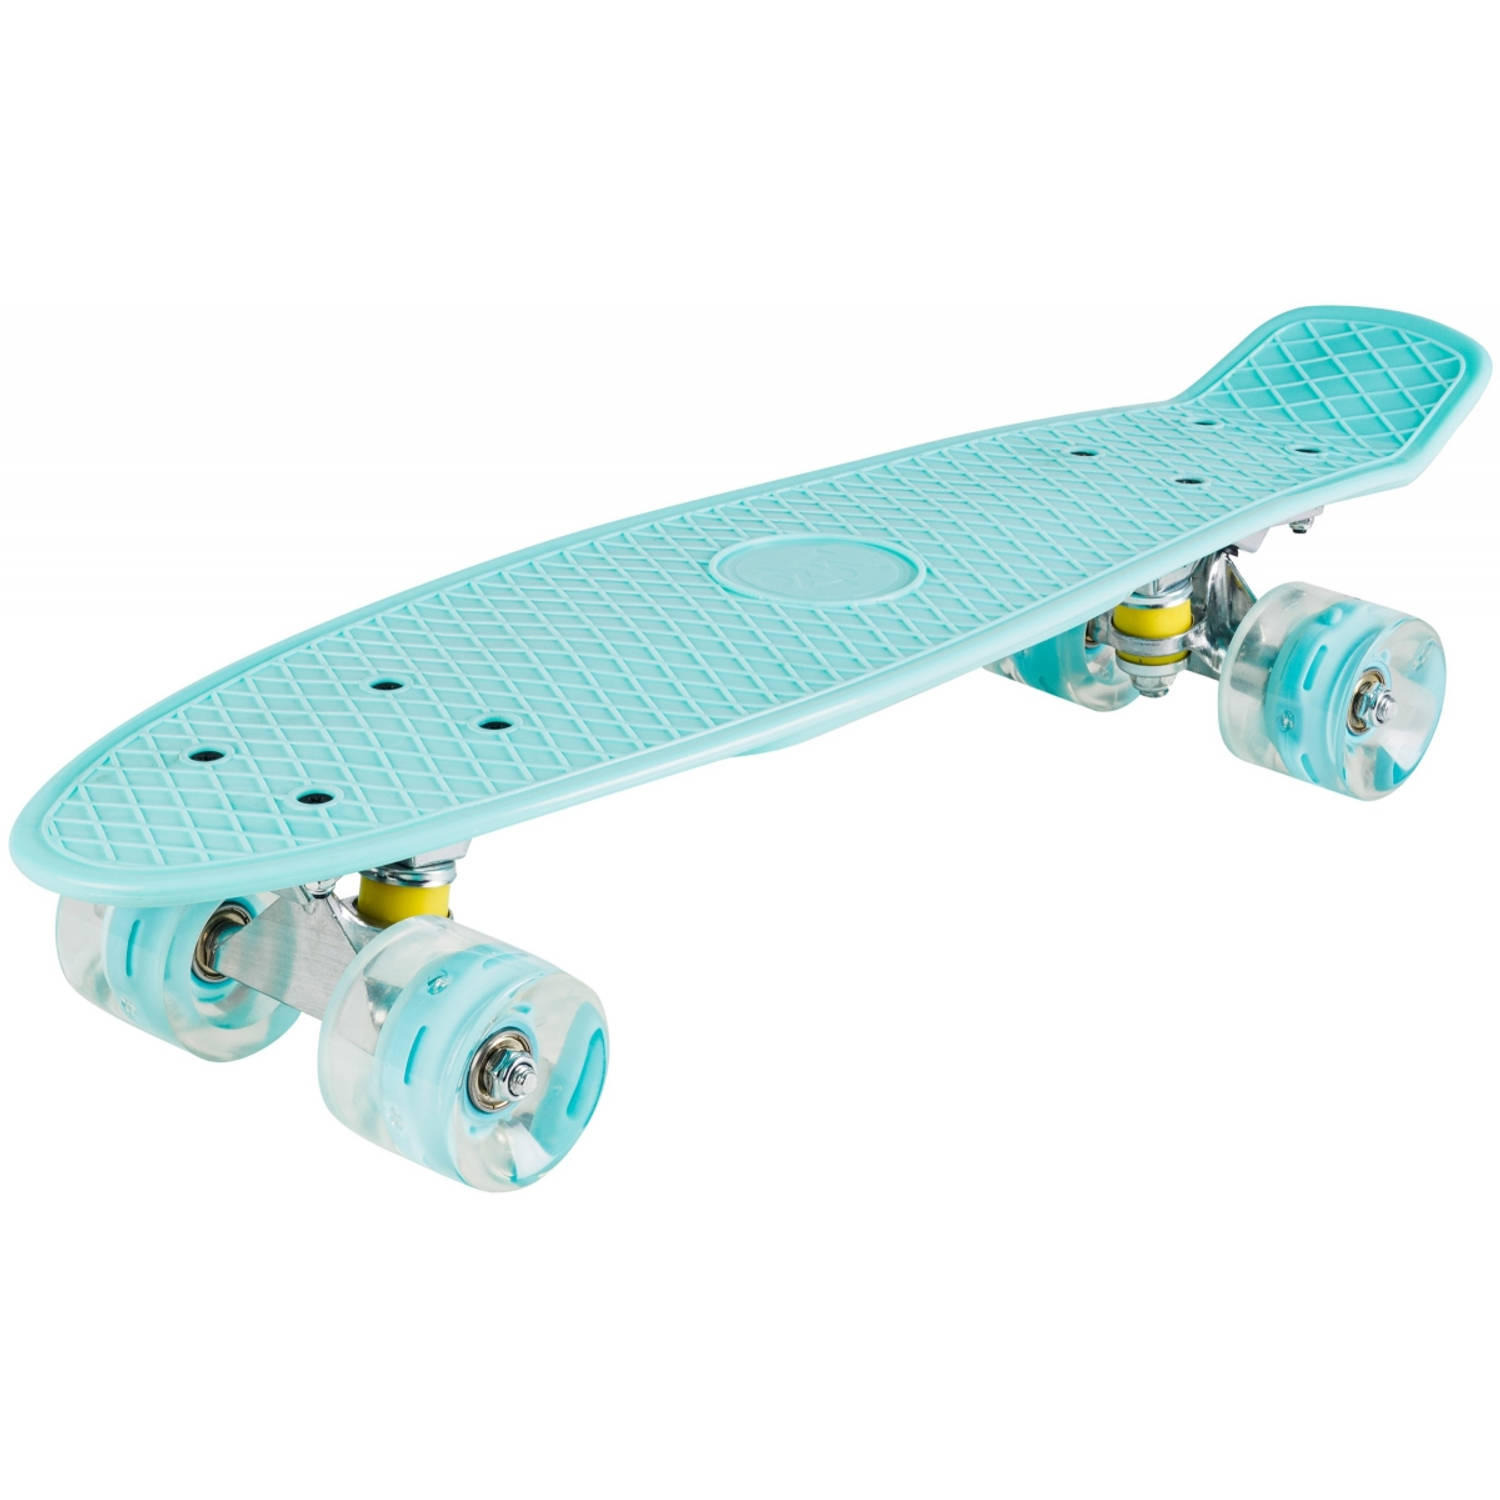 Ewell Populair stilte HyperMotion - Skateboard Penny Board - jongens meisjes skate | Blokker